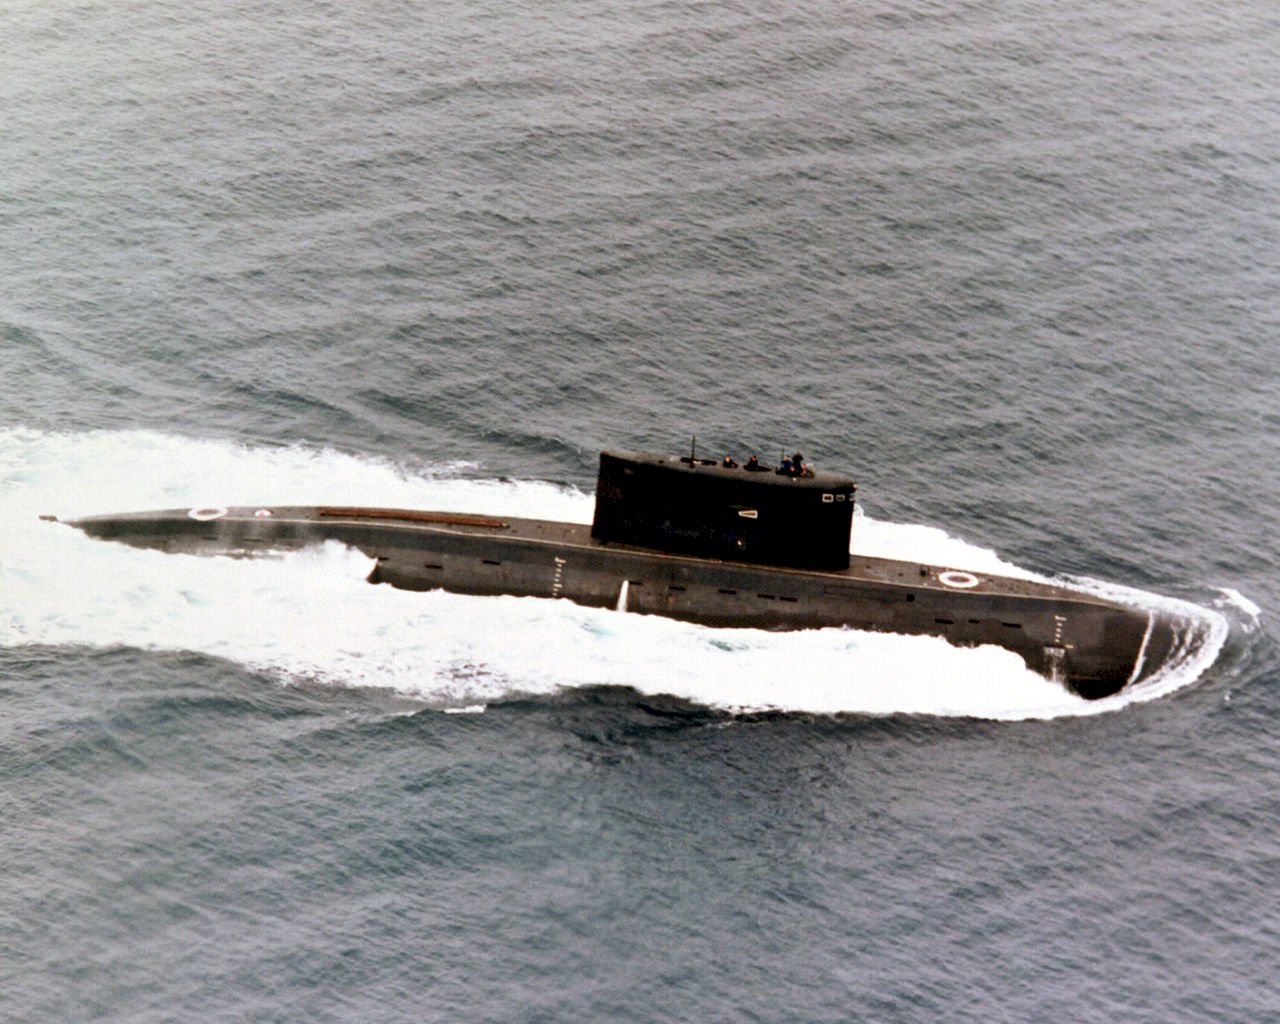 力抗中國 印度加速移交基洛級潛艦給緬甸